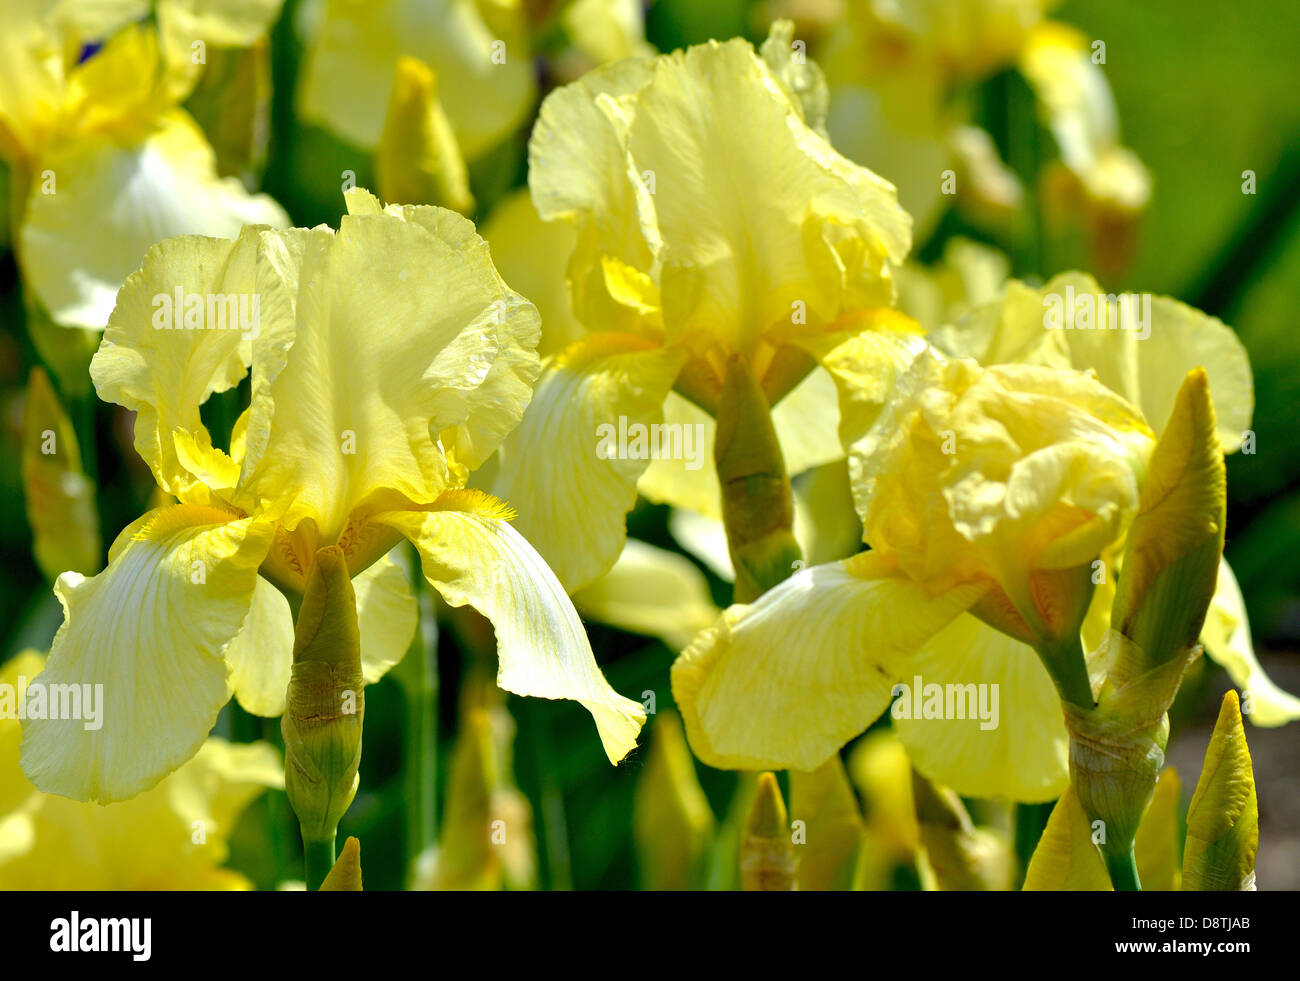 Yellow iris flowers Stock Photo